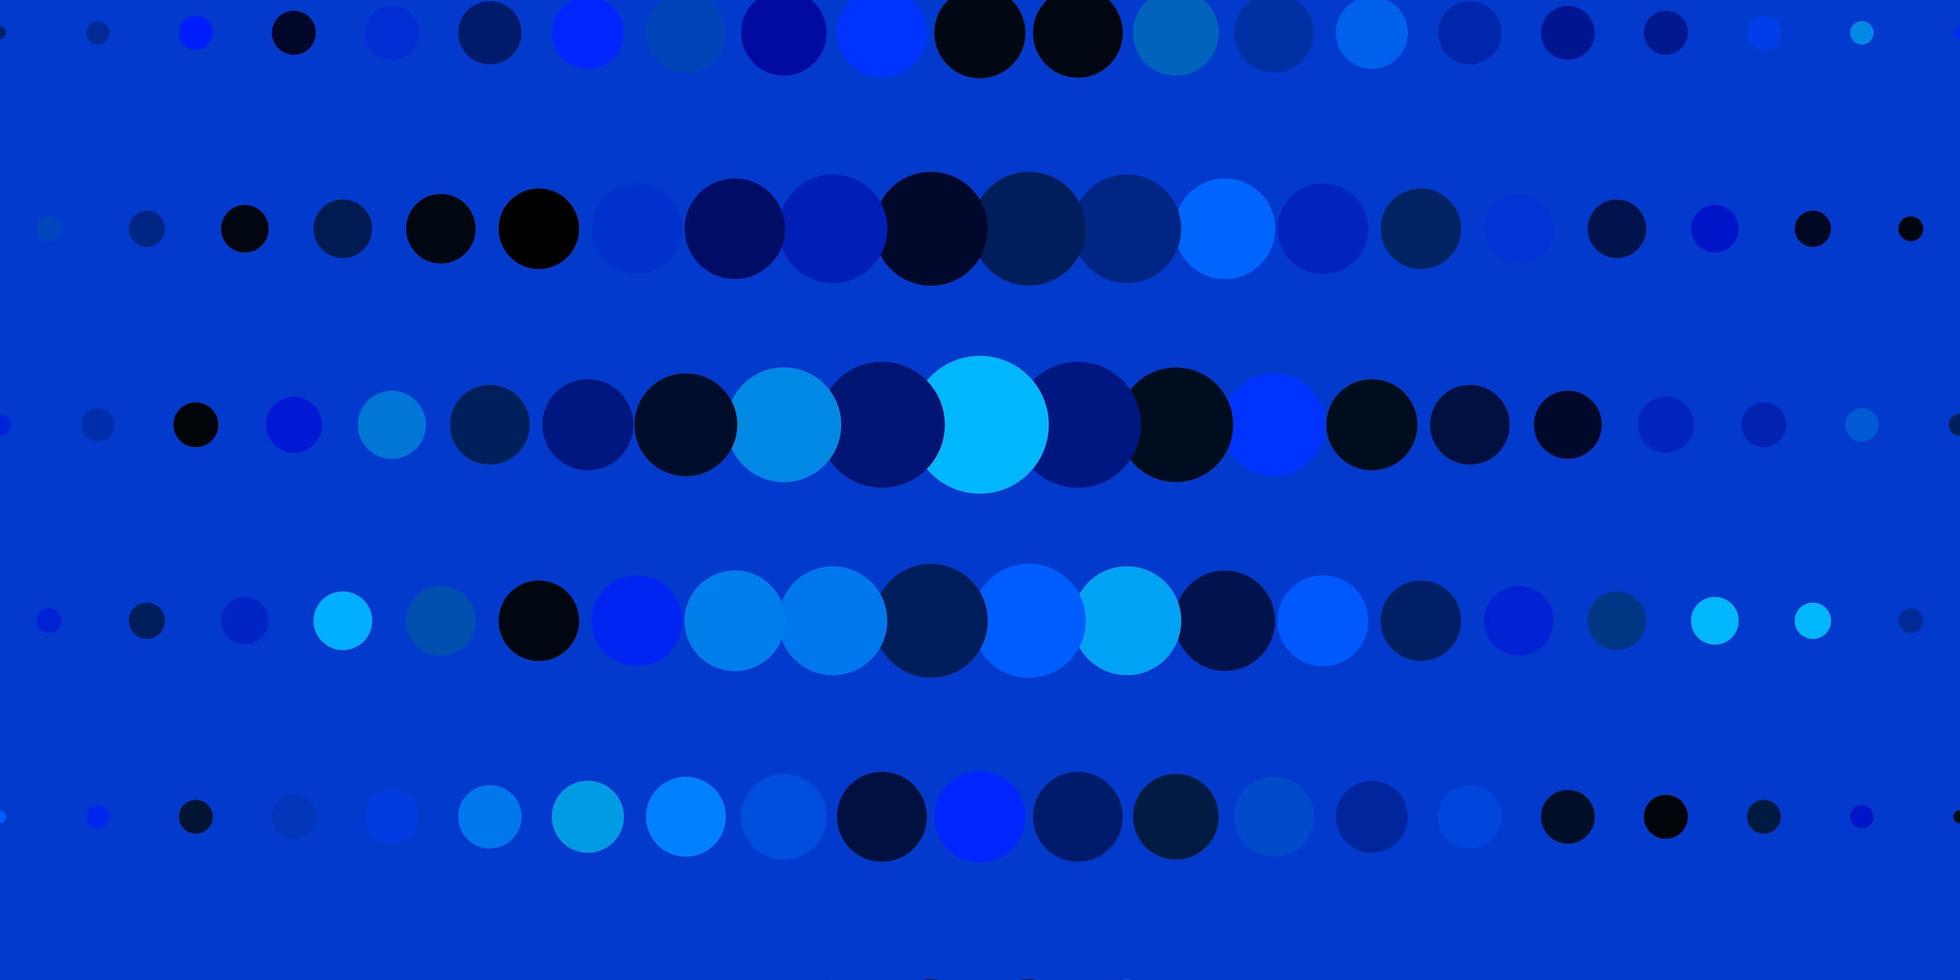 donkerblauw vector sjabloon met cirkels. kleurrijke illustratie met gradiëntpunten in aardstijl. nieuwe sjabloon voor een merkboek.